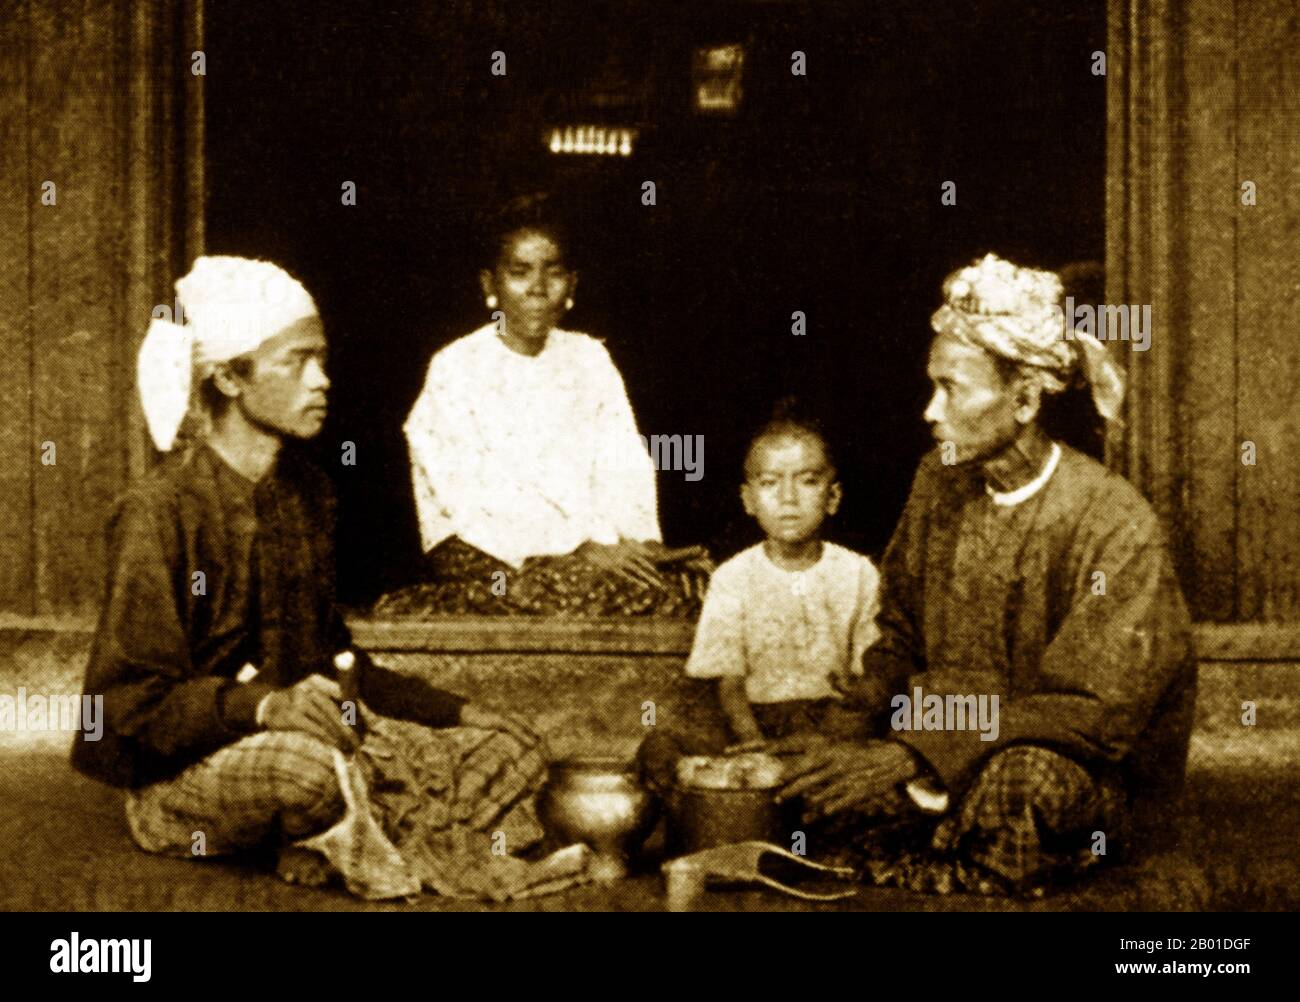 Birmanie : un hôte birman reçoit un invité, vers 1892-1896. La conquête britannique de la Birmanie a commencé en 1824 en réponse à une tentative birmane d'envahir l'Inde. En 1886, et après deux autres guerres, la Grande-Bretagne avait incorporé tout le pays dans le Raj britannique. Pour stimuler le commerce et faciliter les changements, les Britanniques ont fait venir des Indiens et des Chinois, qui ont rapidement déplacé les Birmans dans les zones urbaines. À ce jour, Rangoon et Mandalay ont de grandes populations indiennes ethniques. Des chemins de fer et des écoles ont été construits, ainsi qu'un grand nombre de prisons, dont la tristement célèbre prison d'Insein. Banque D'Images